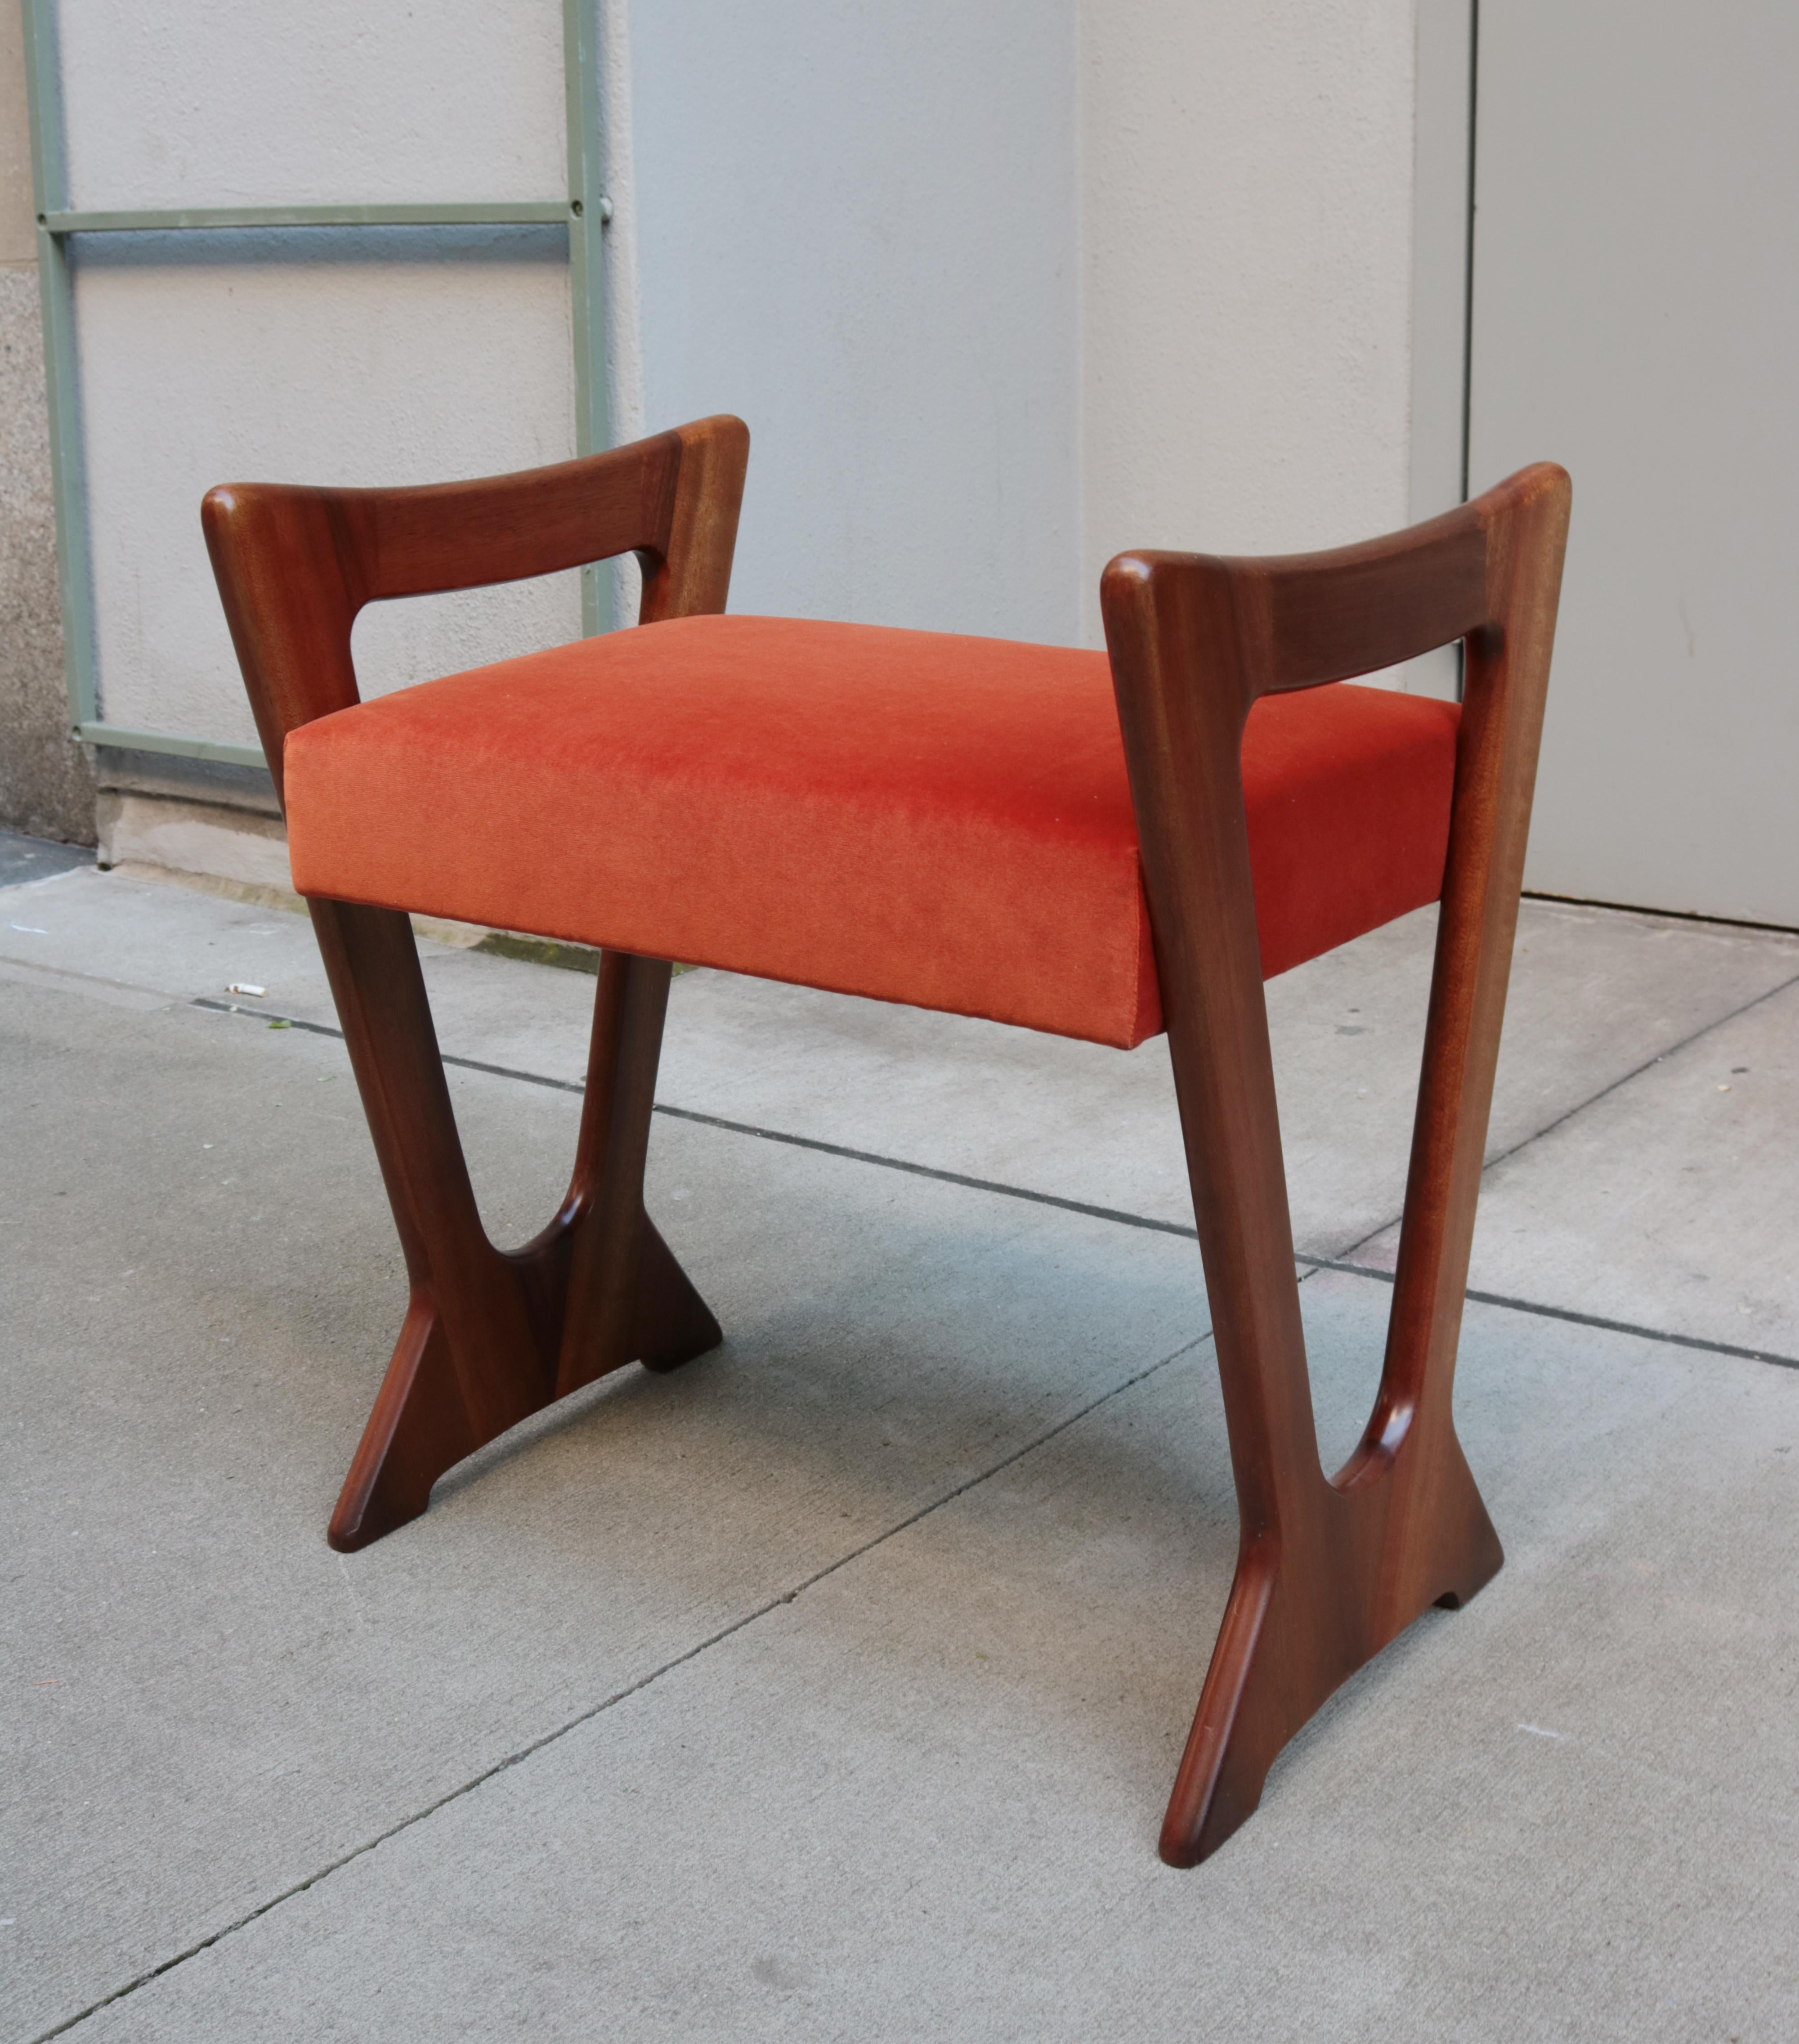 A pair of Italian Mid-Century Modern stools.
Mahogany legs.